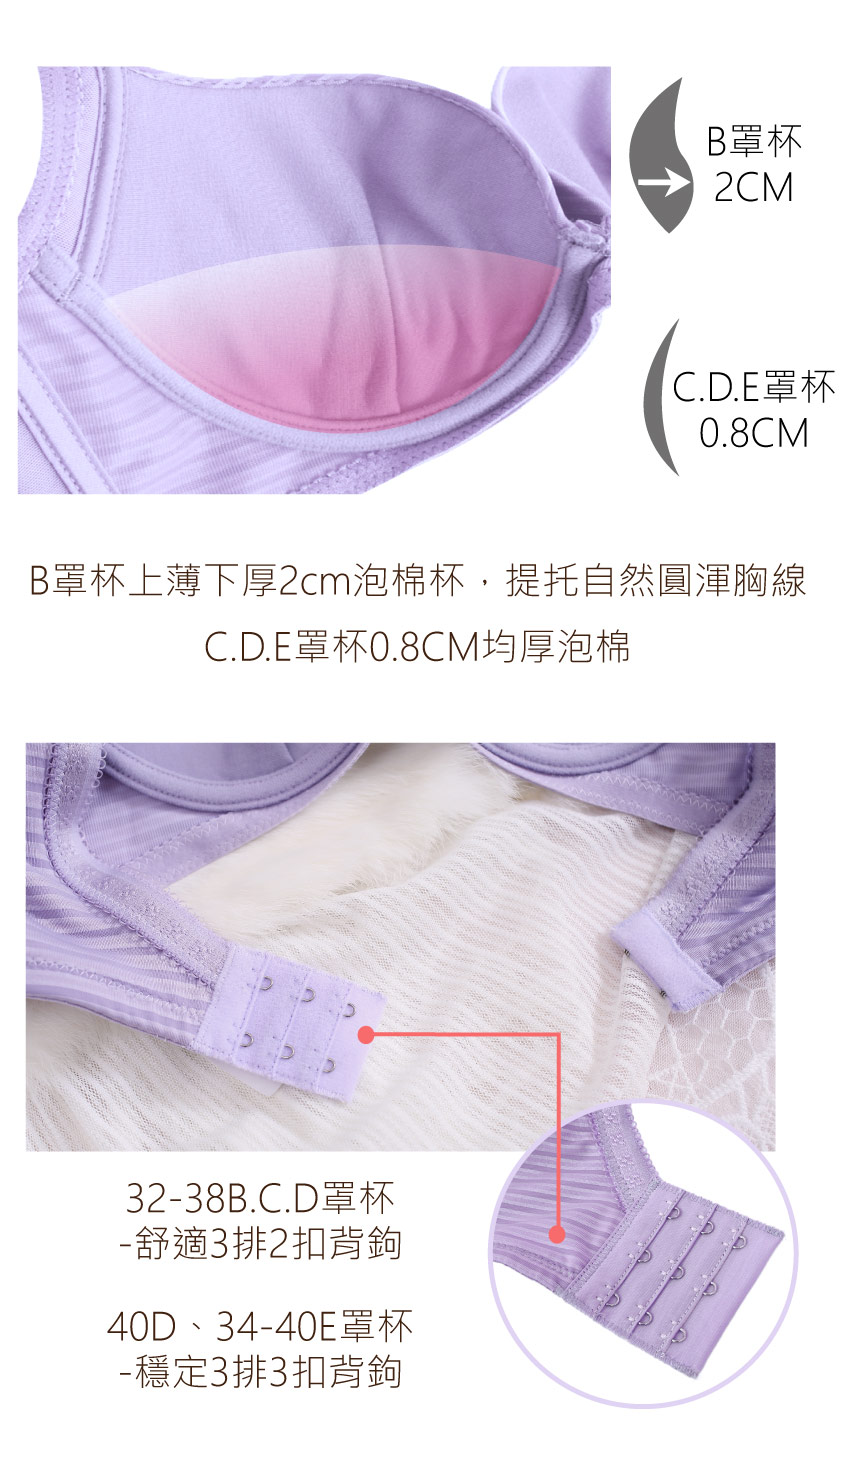 時尚無痕系列BCDE罩杯內衣(裸色)